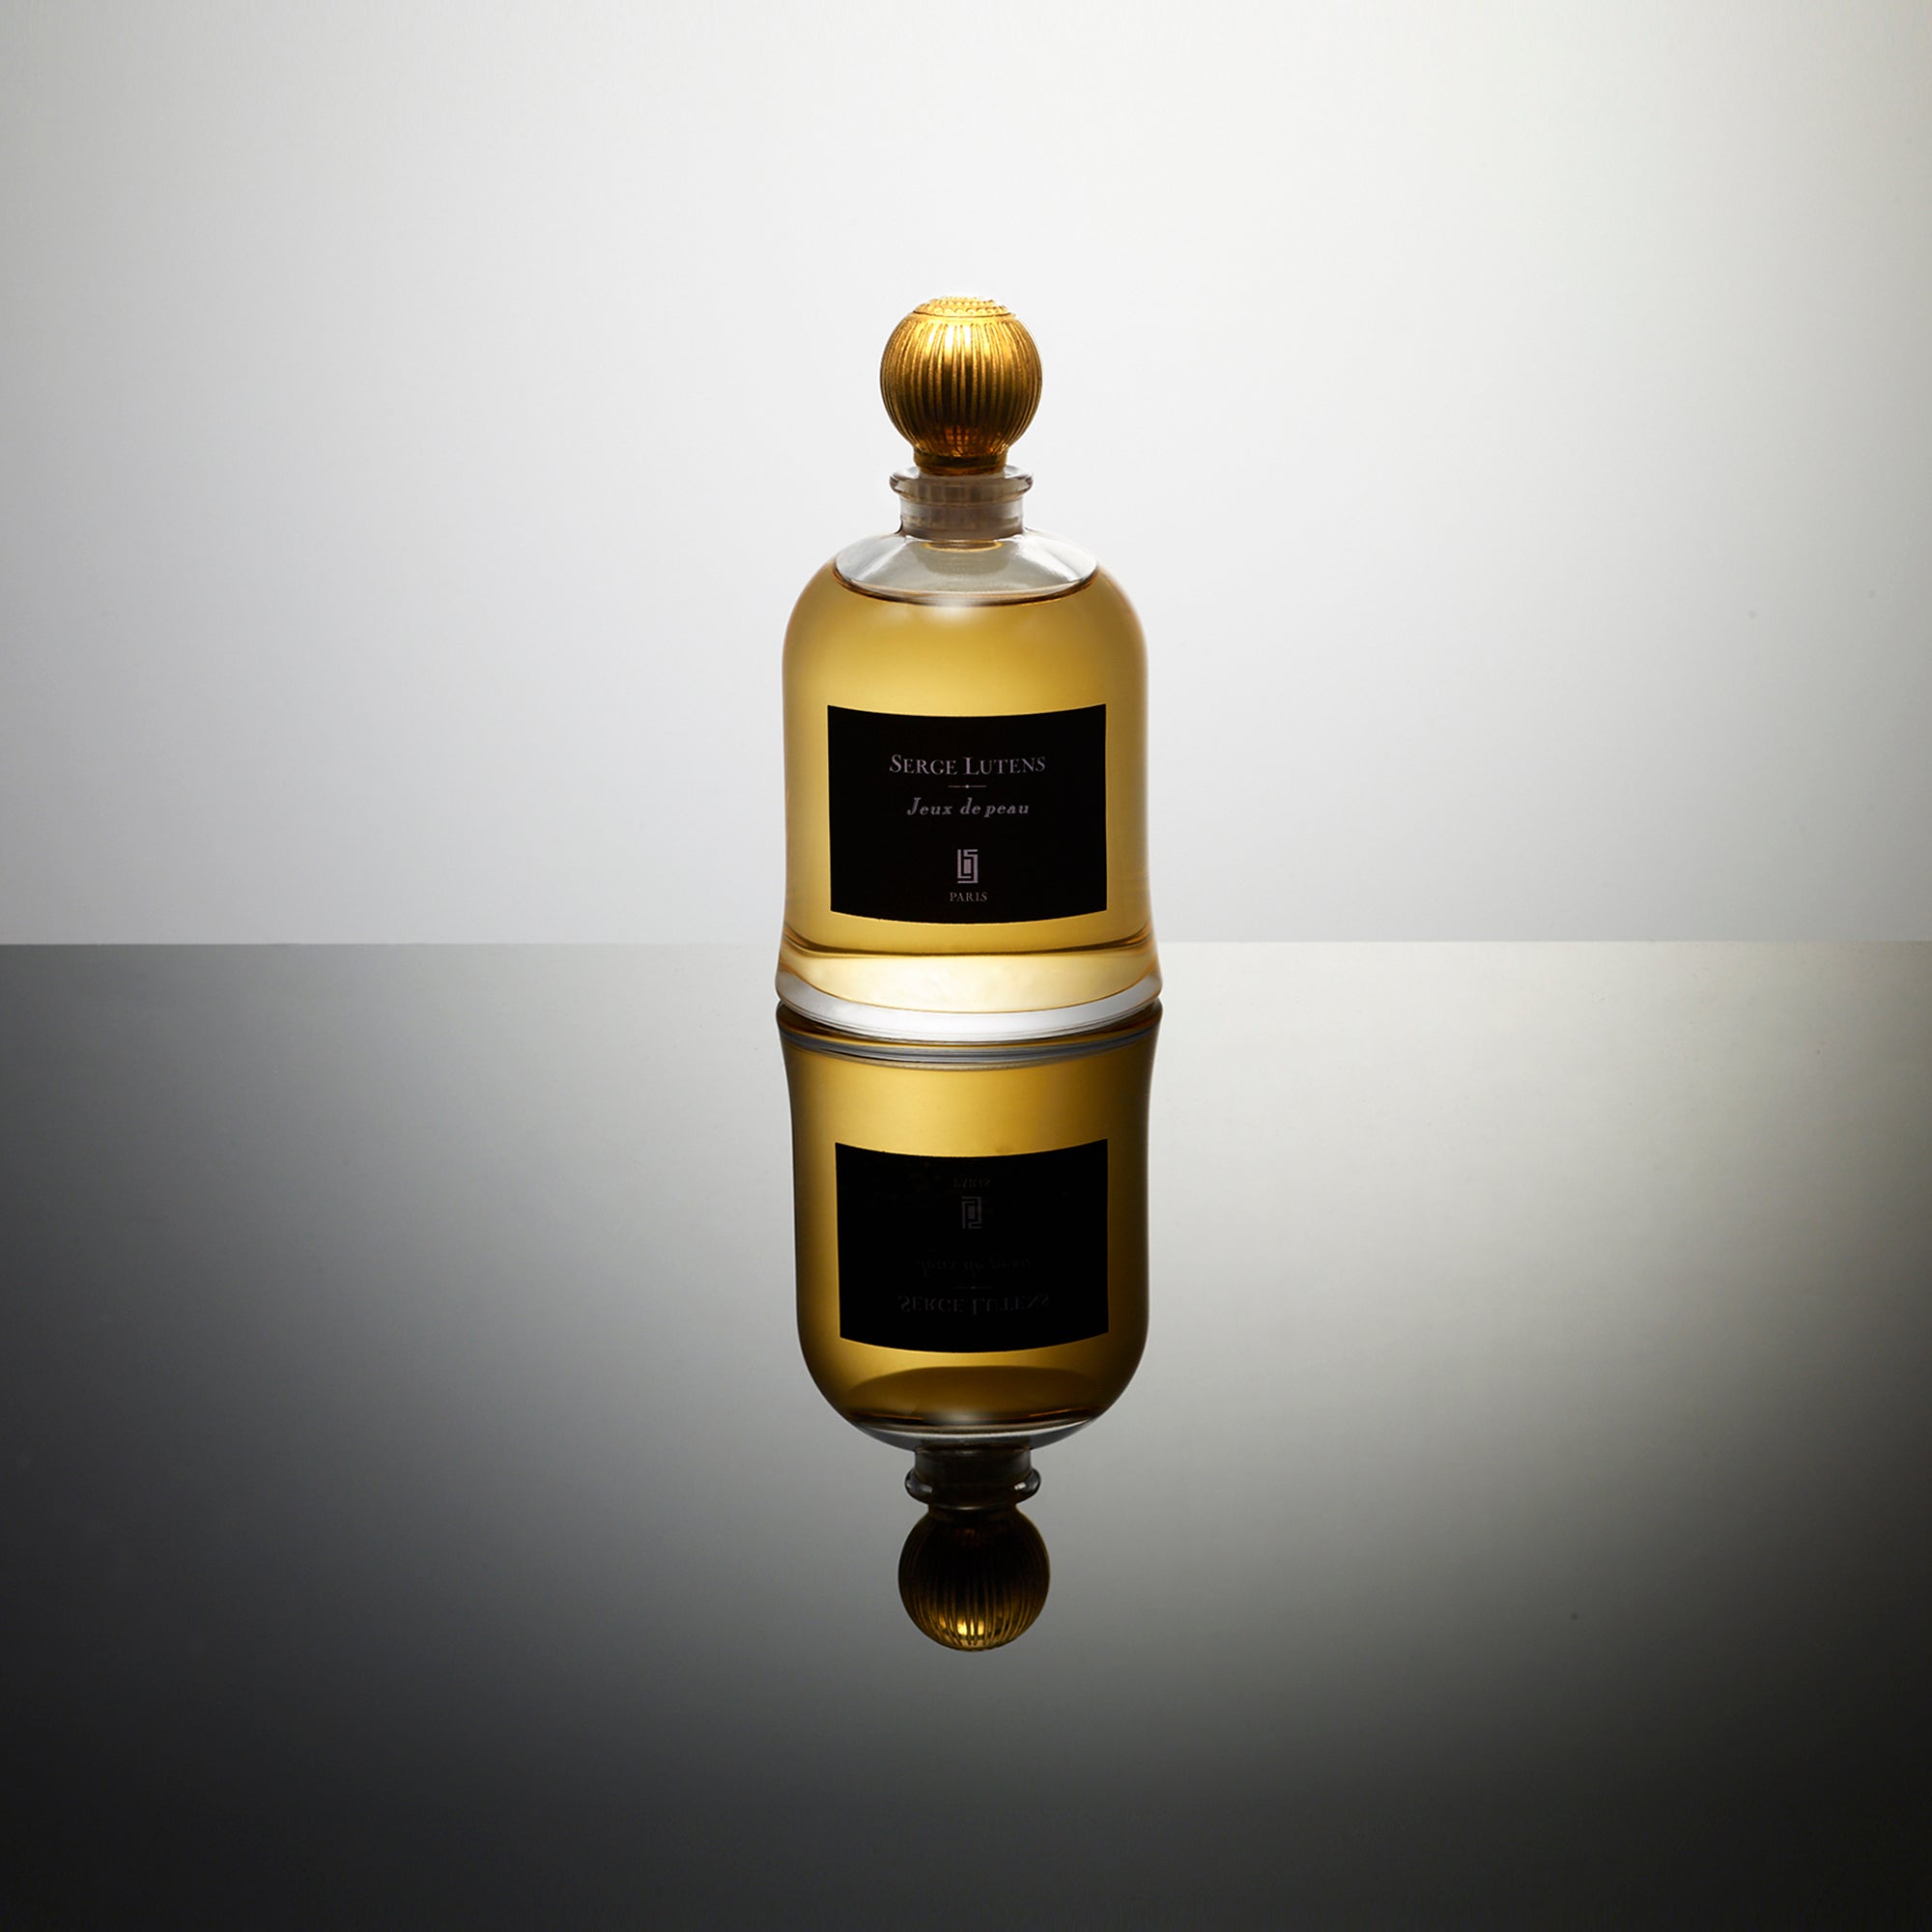 Jeux de Peau Serge Lutens perfume - a fragrance for women and men 2011